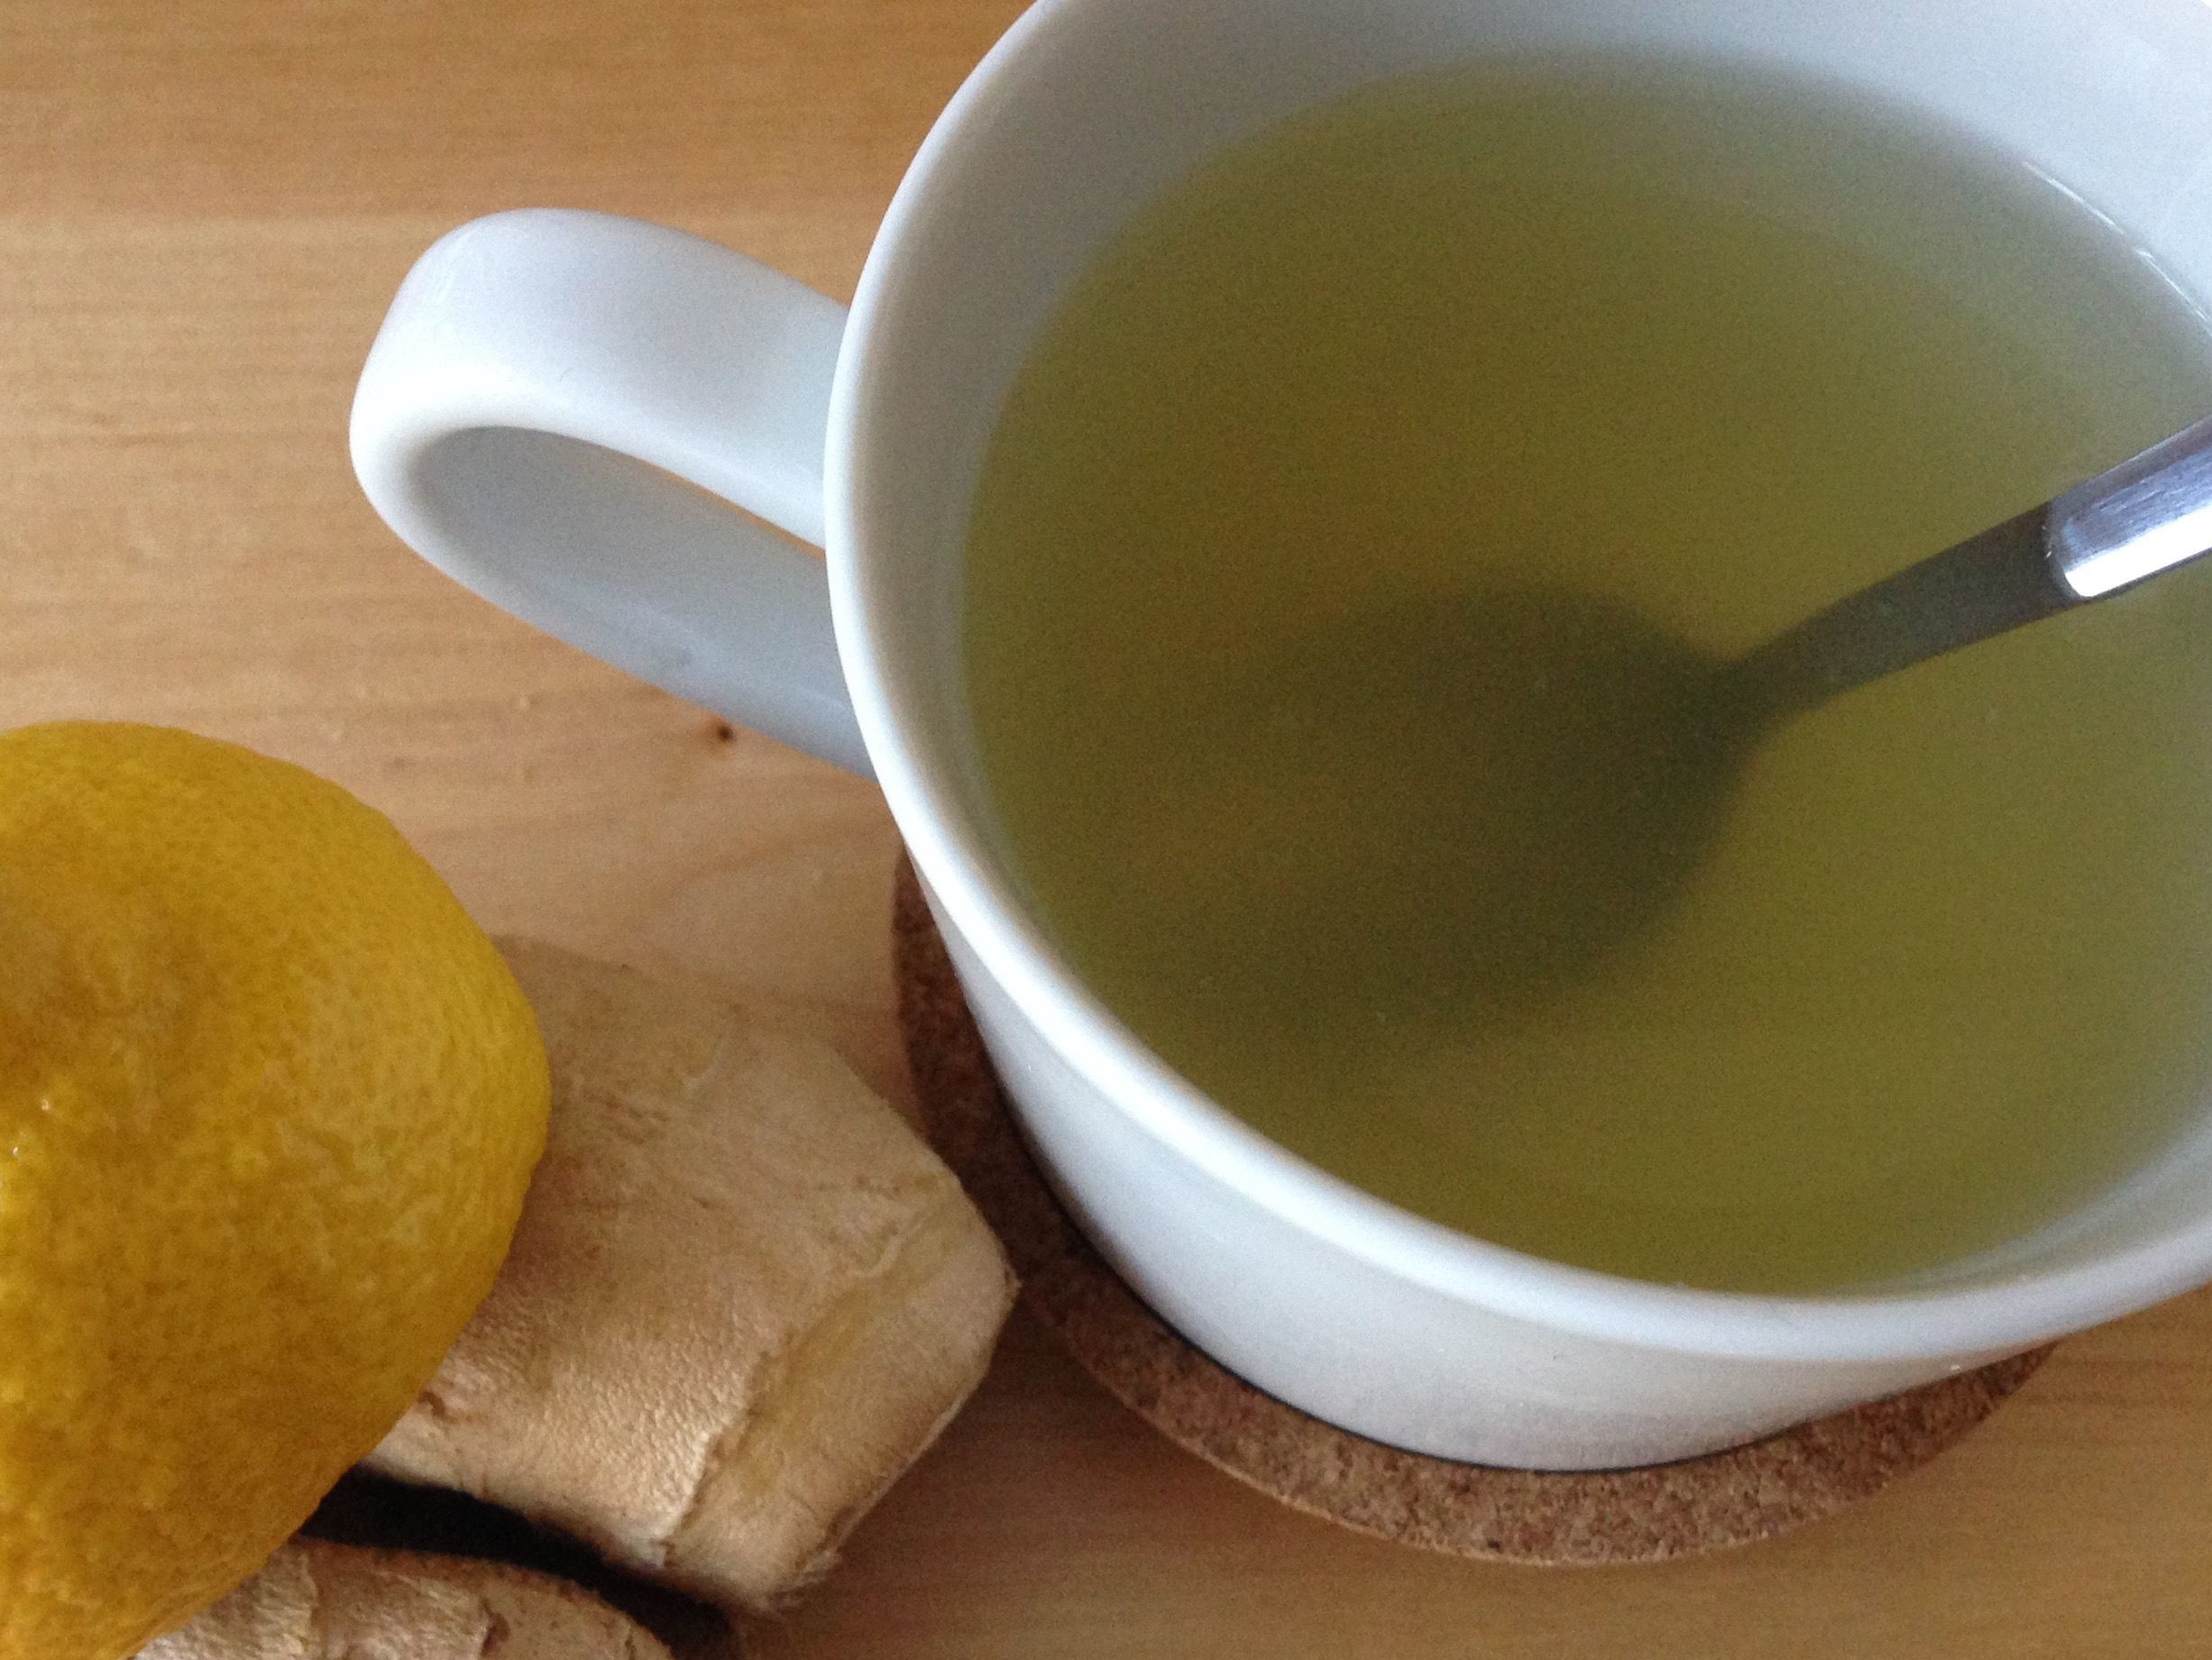 té de jengibre y del limón es el ideal para bajar de peso